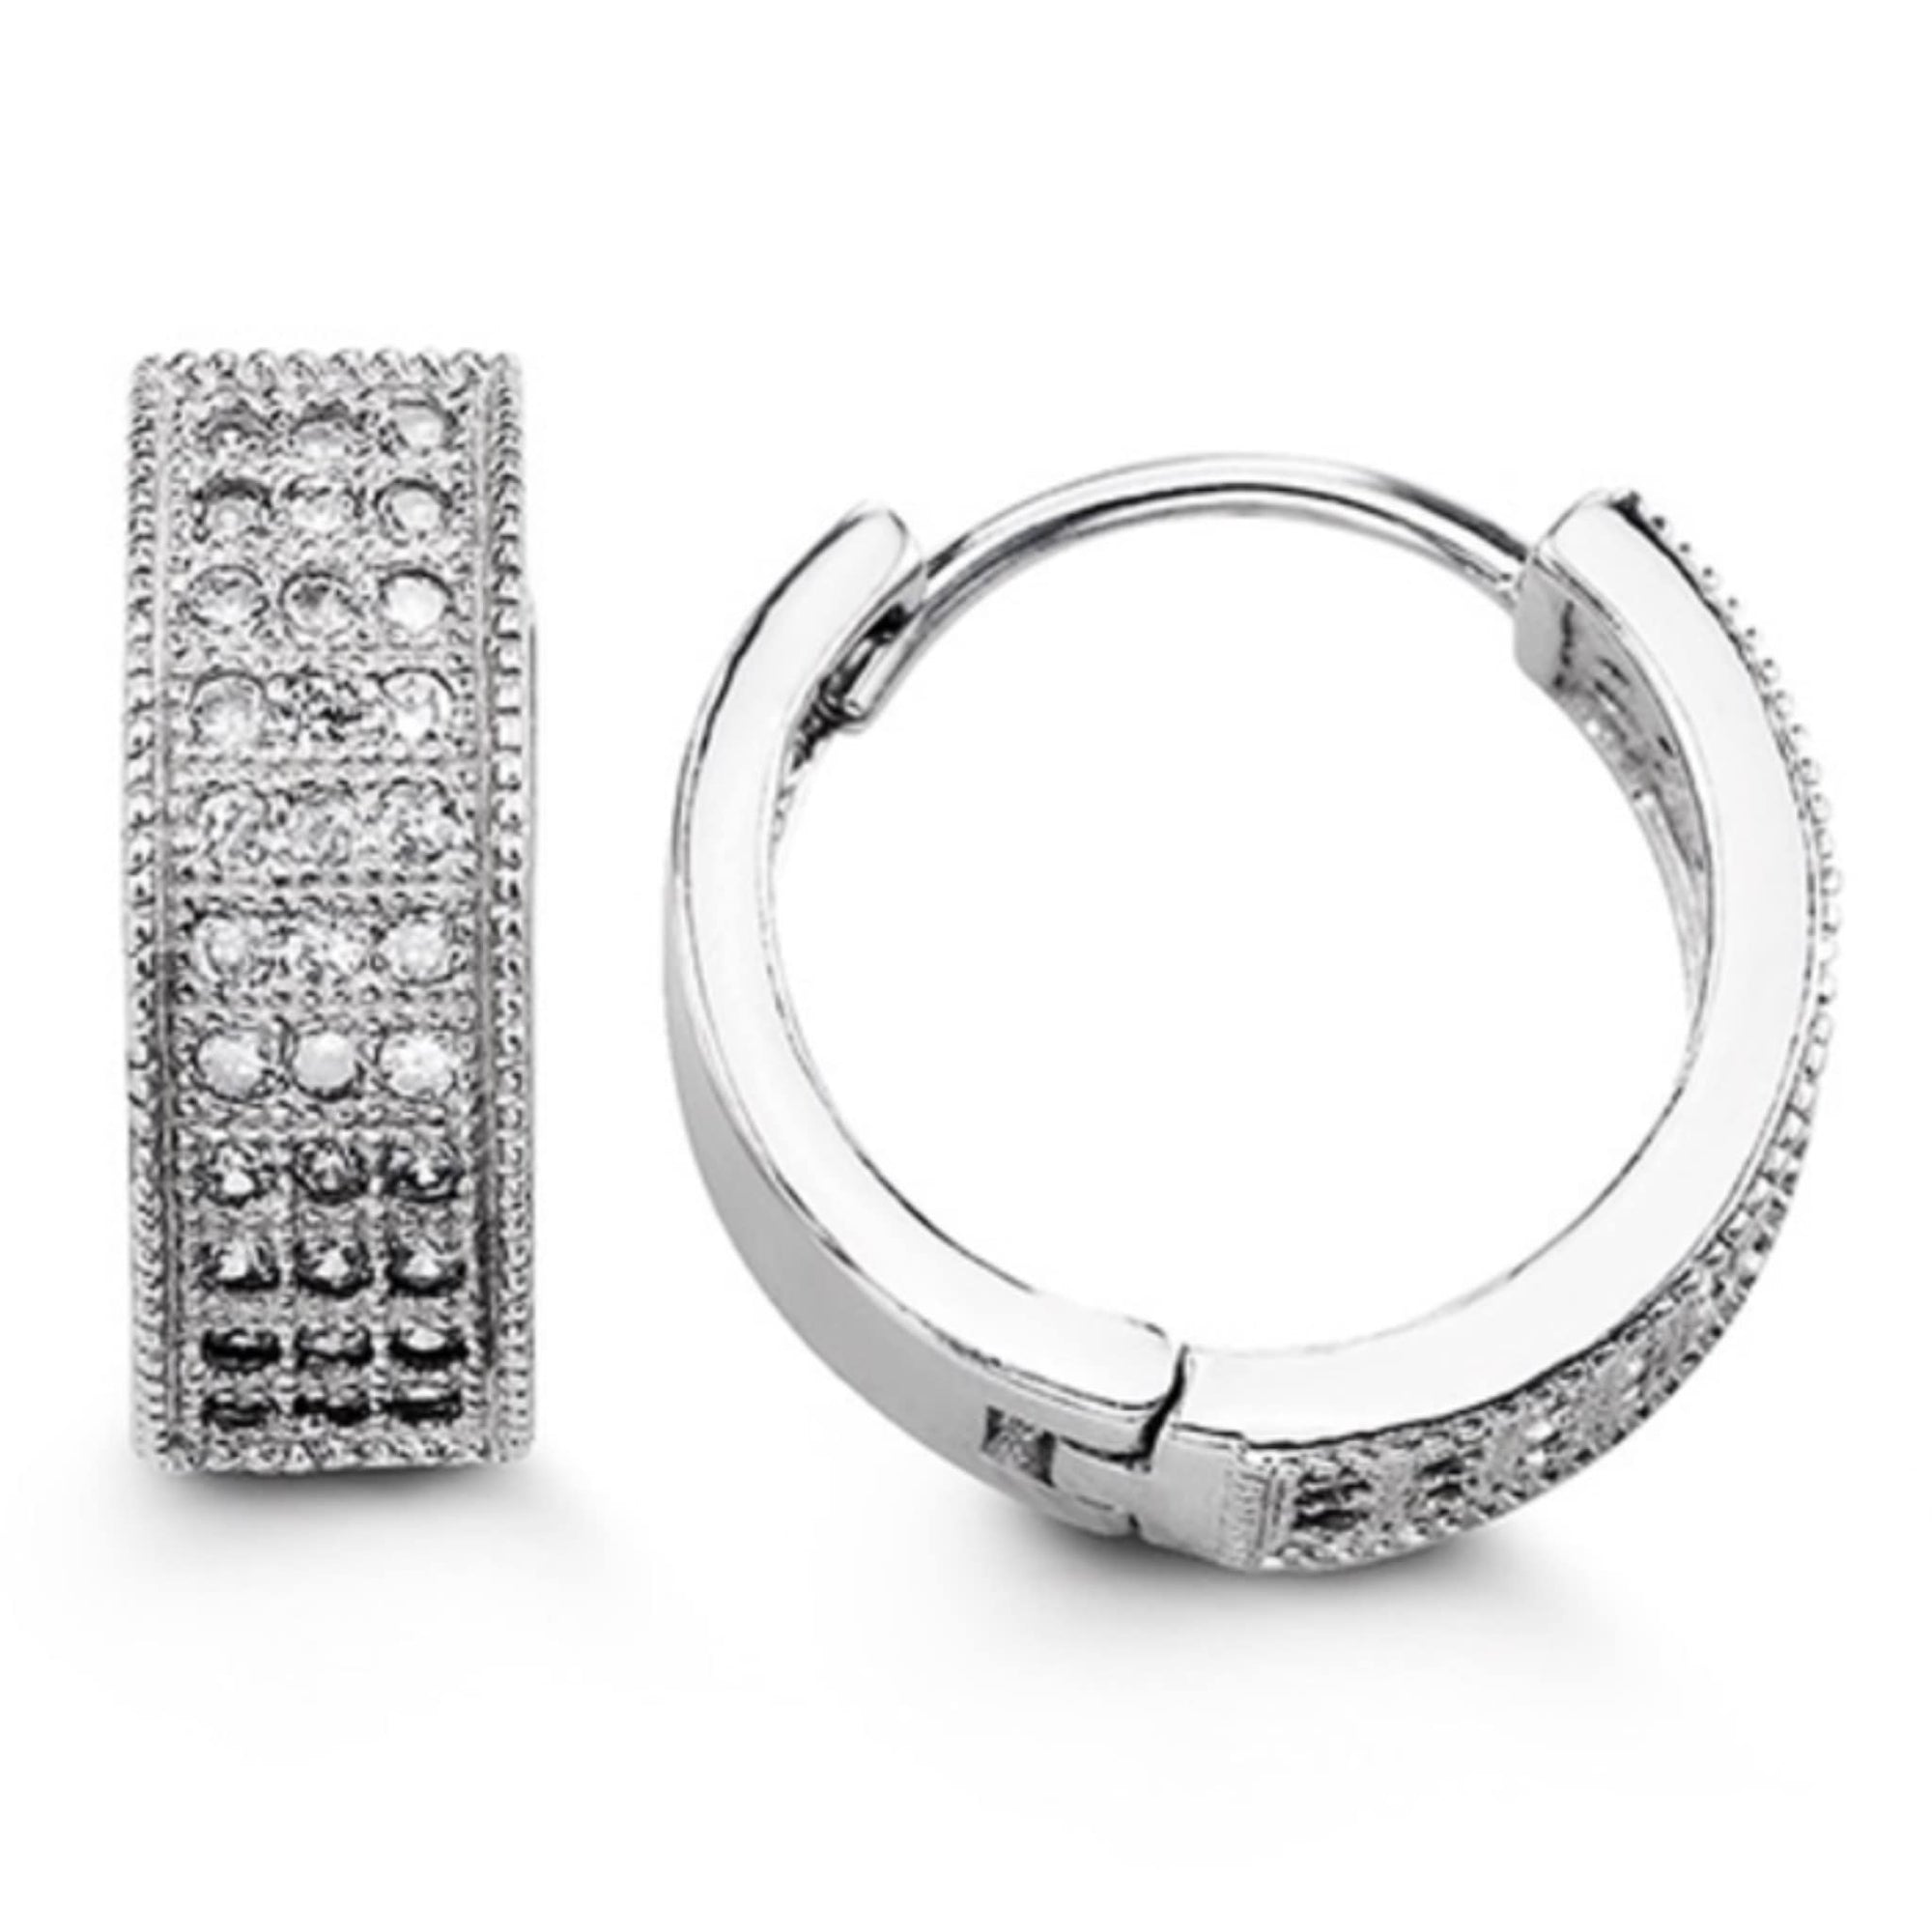 16mm Silver Pavé Set CZ Huggie Hoop Earrings at Arman's Jewellers